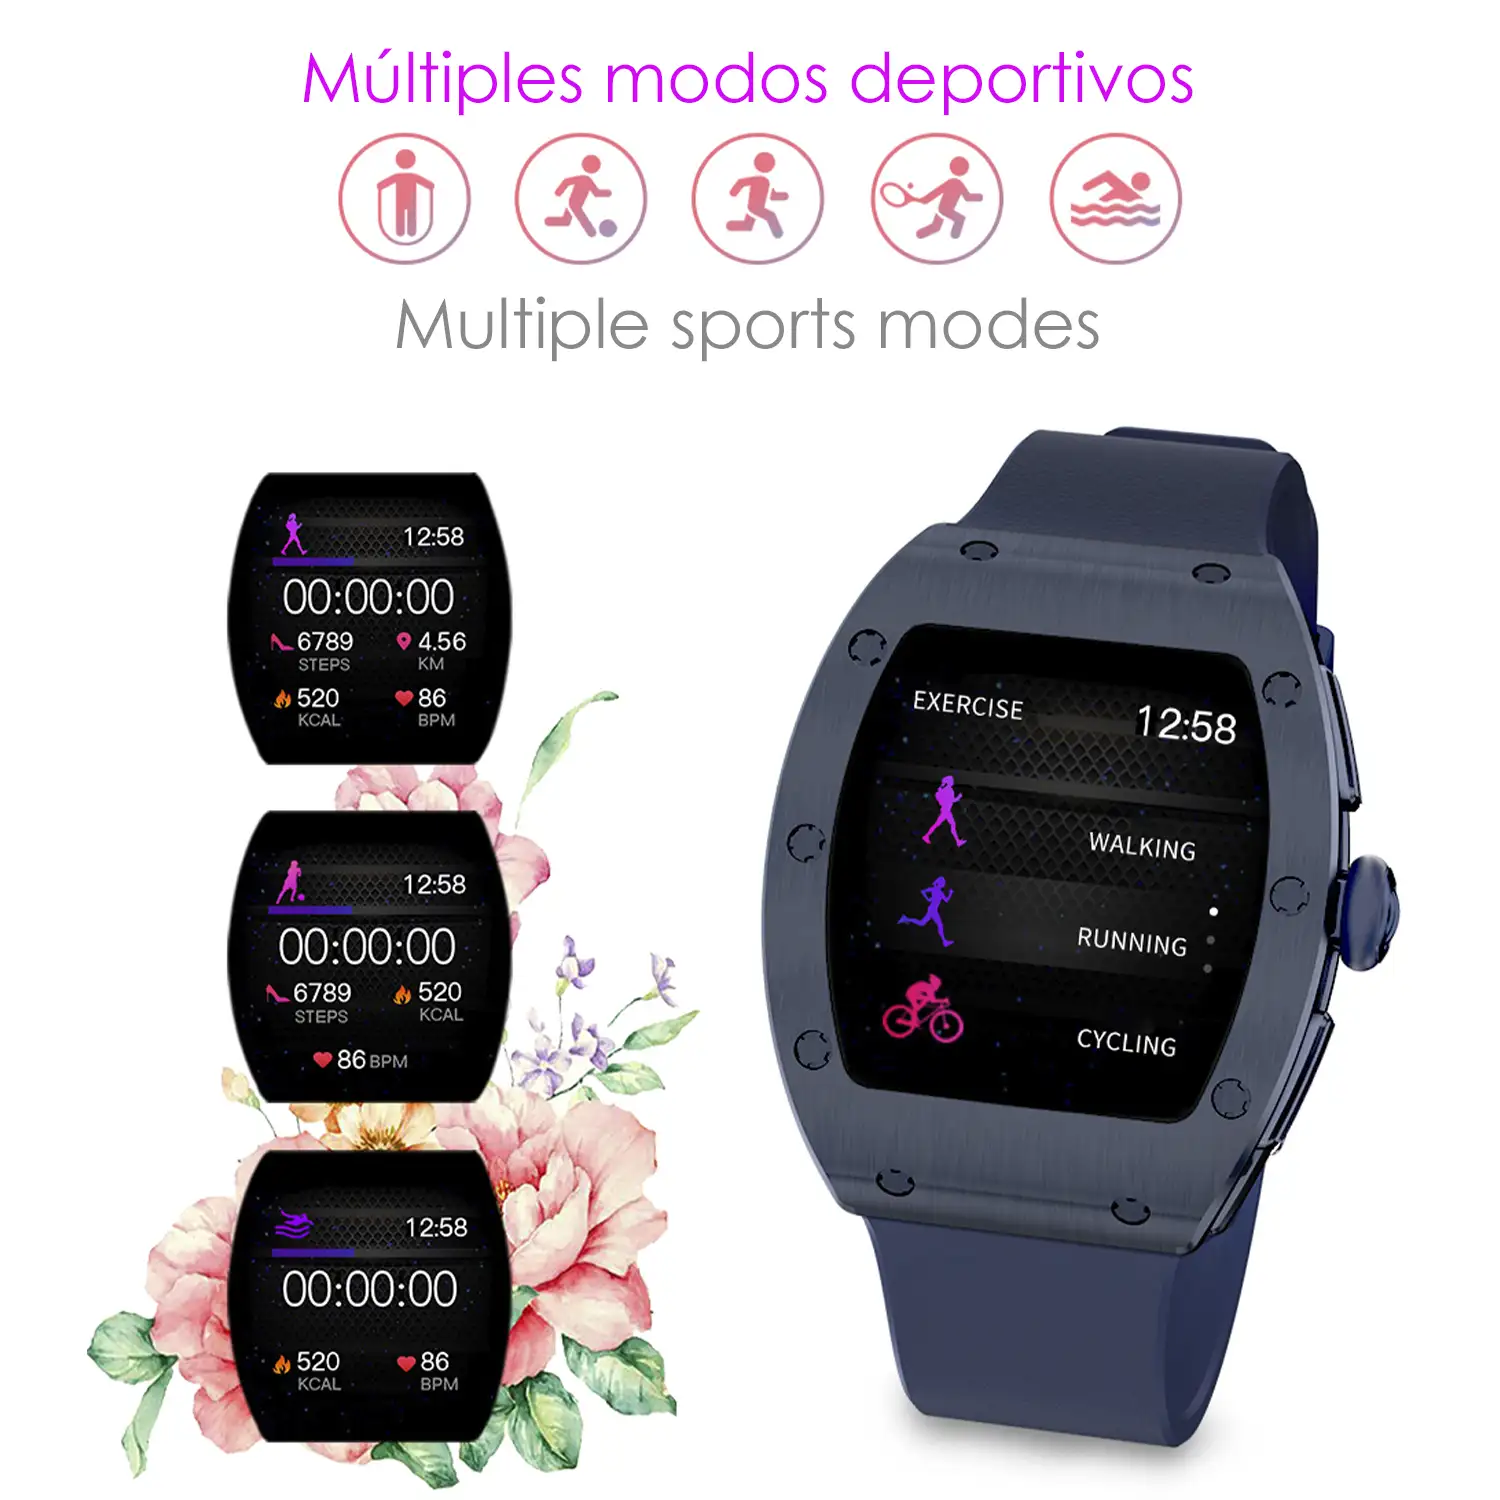 Smartwatch M7, especial muñecas finas, con monitor de tensión, oxígeno en sangre y cardíaco; 8 modos multideportivos. Notificaciones de Apps.